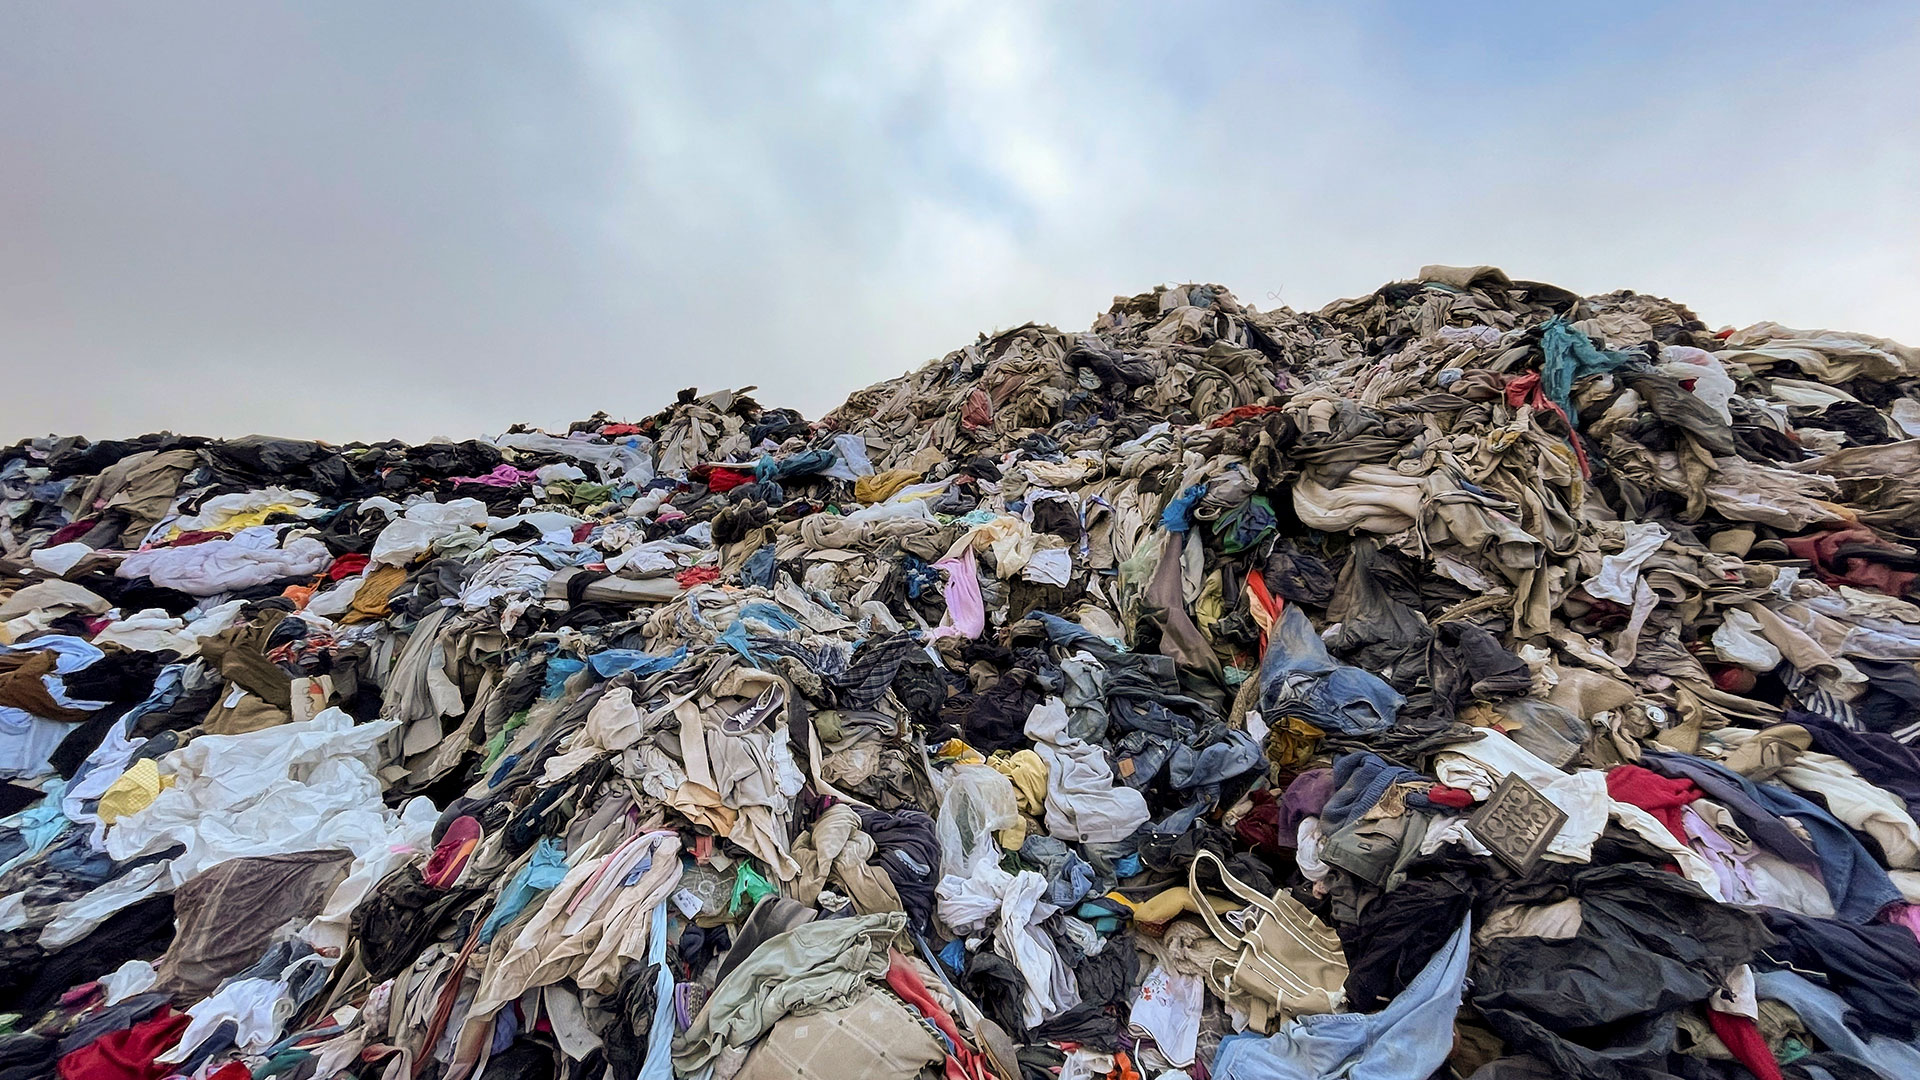 Industria textil, de las más contaminantes y dañinas para el planeta - Yo Influyo